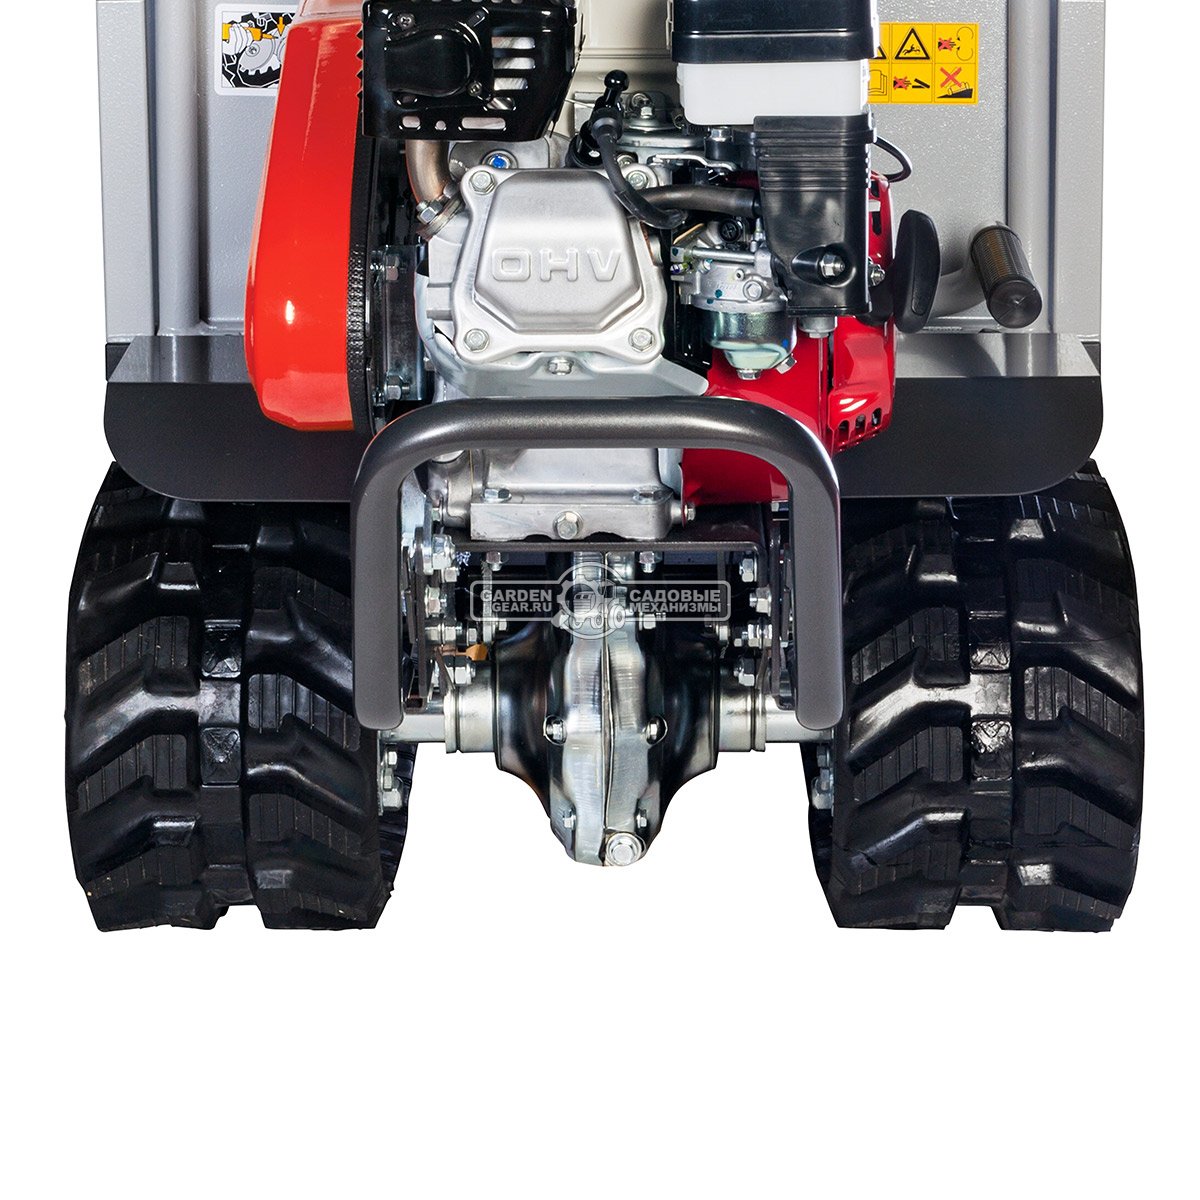 Гусеничный транспортер Efco TN 4500 (Honda 163 см3, грузоподъемность 450 кг, 3 вперед/1 назад, 180 кг.)